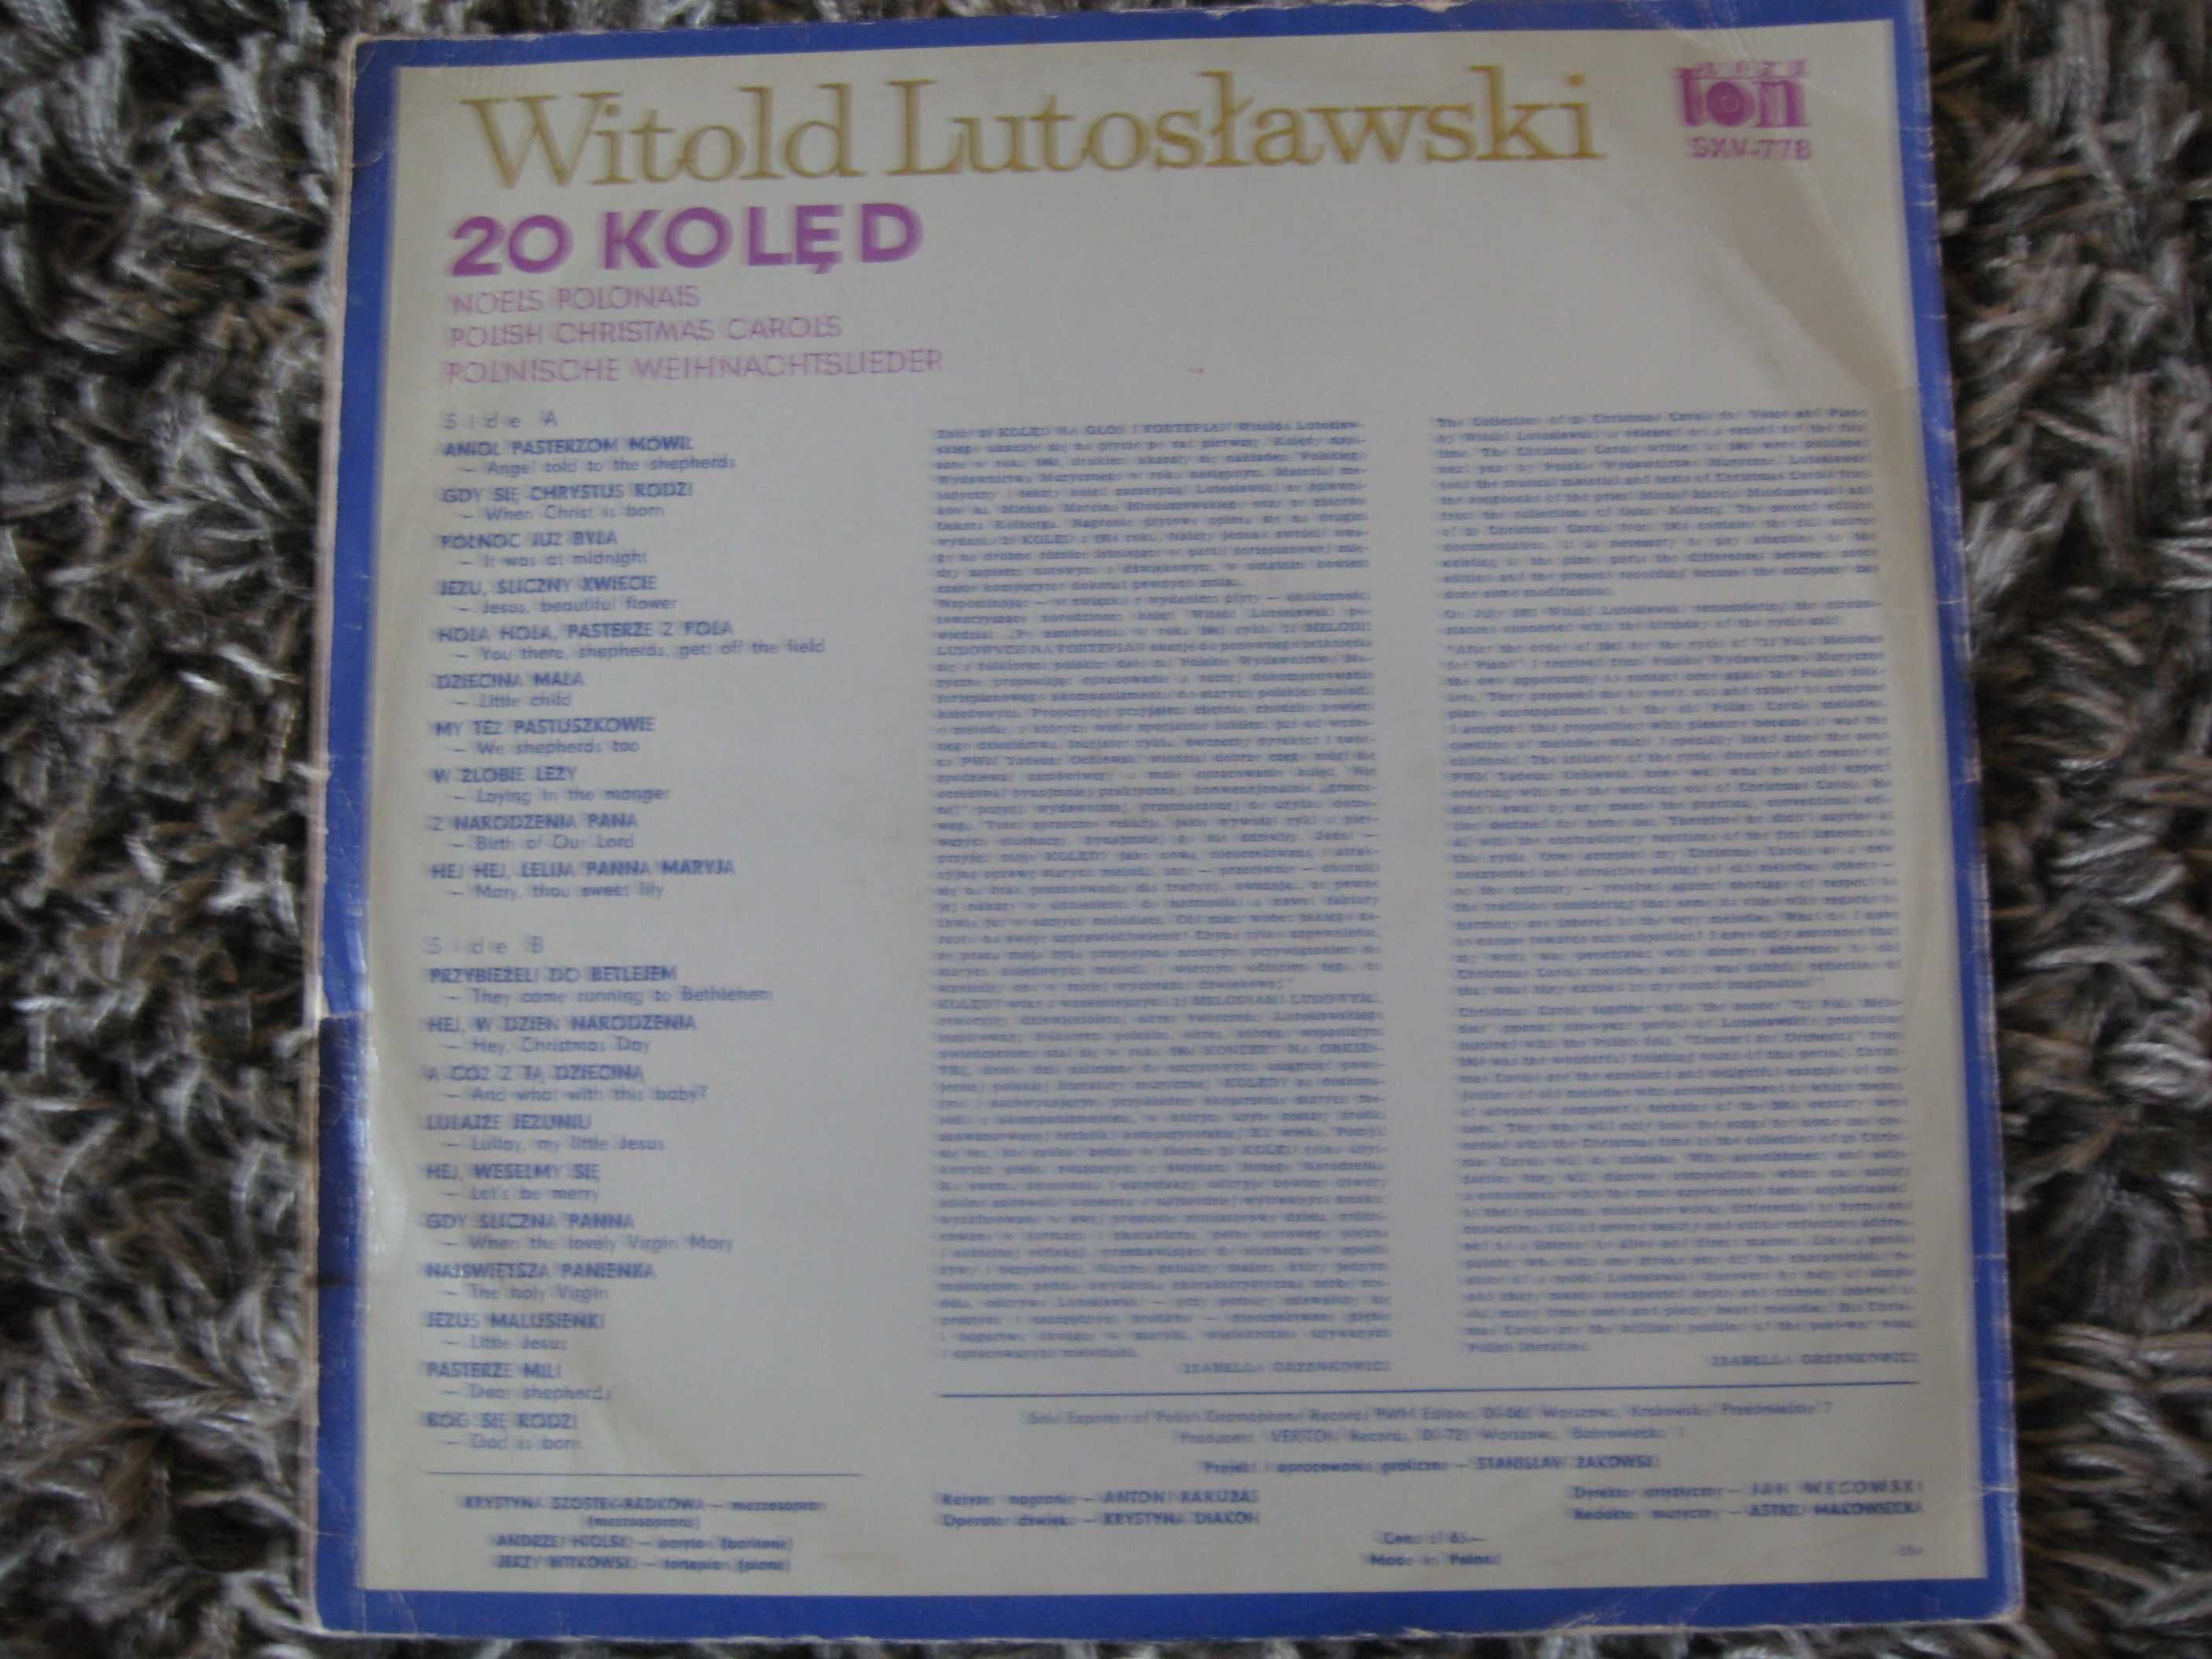 Witold Lutosławski - "20 kolęd"